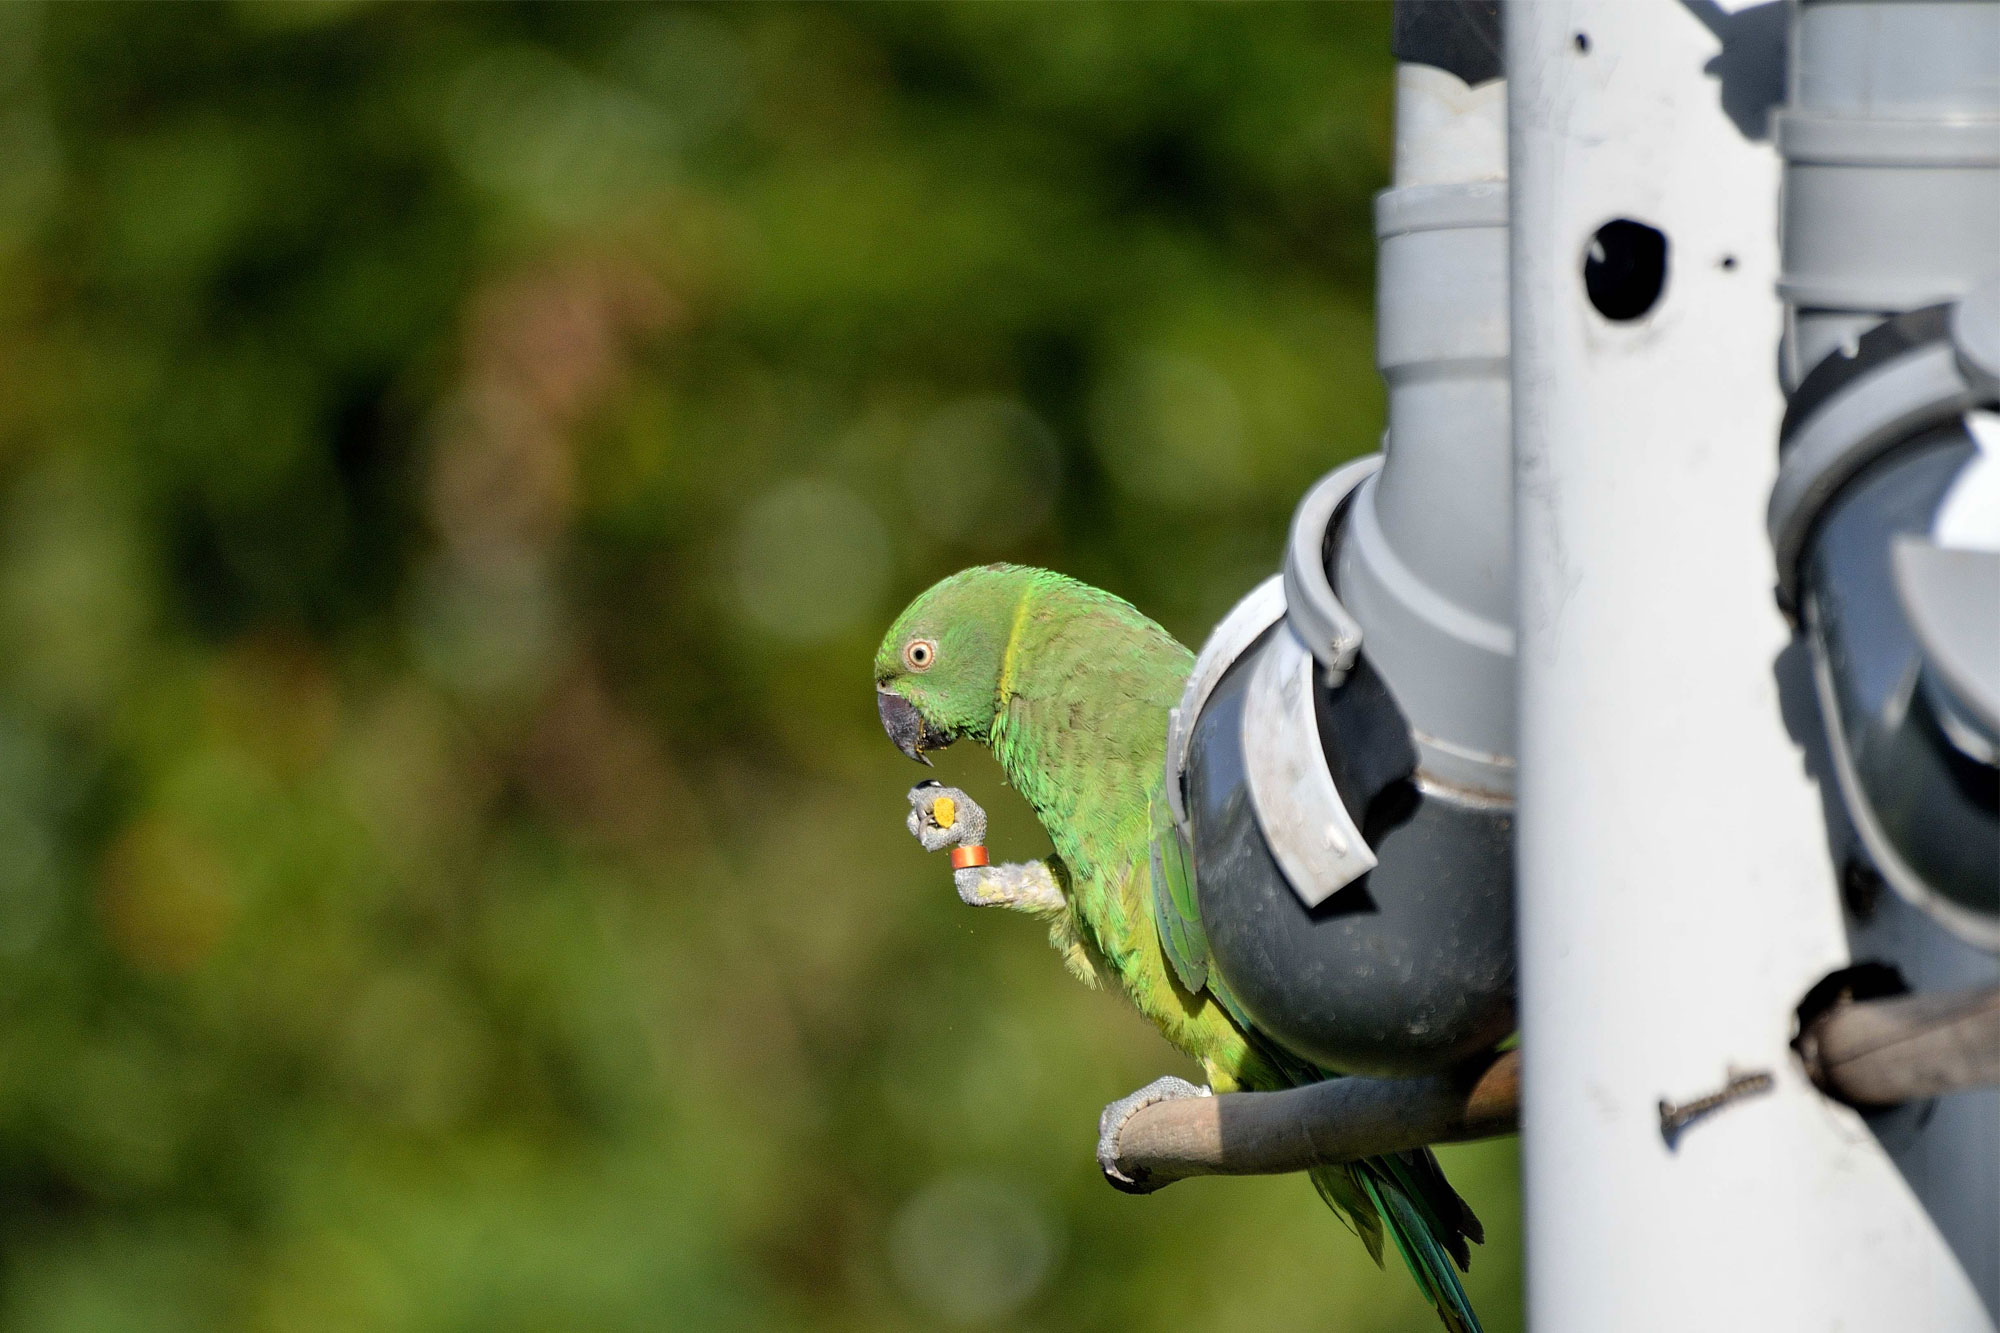 Mauritius parakeet feeding